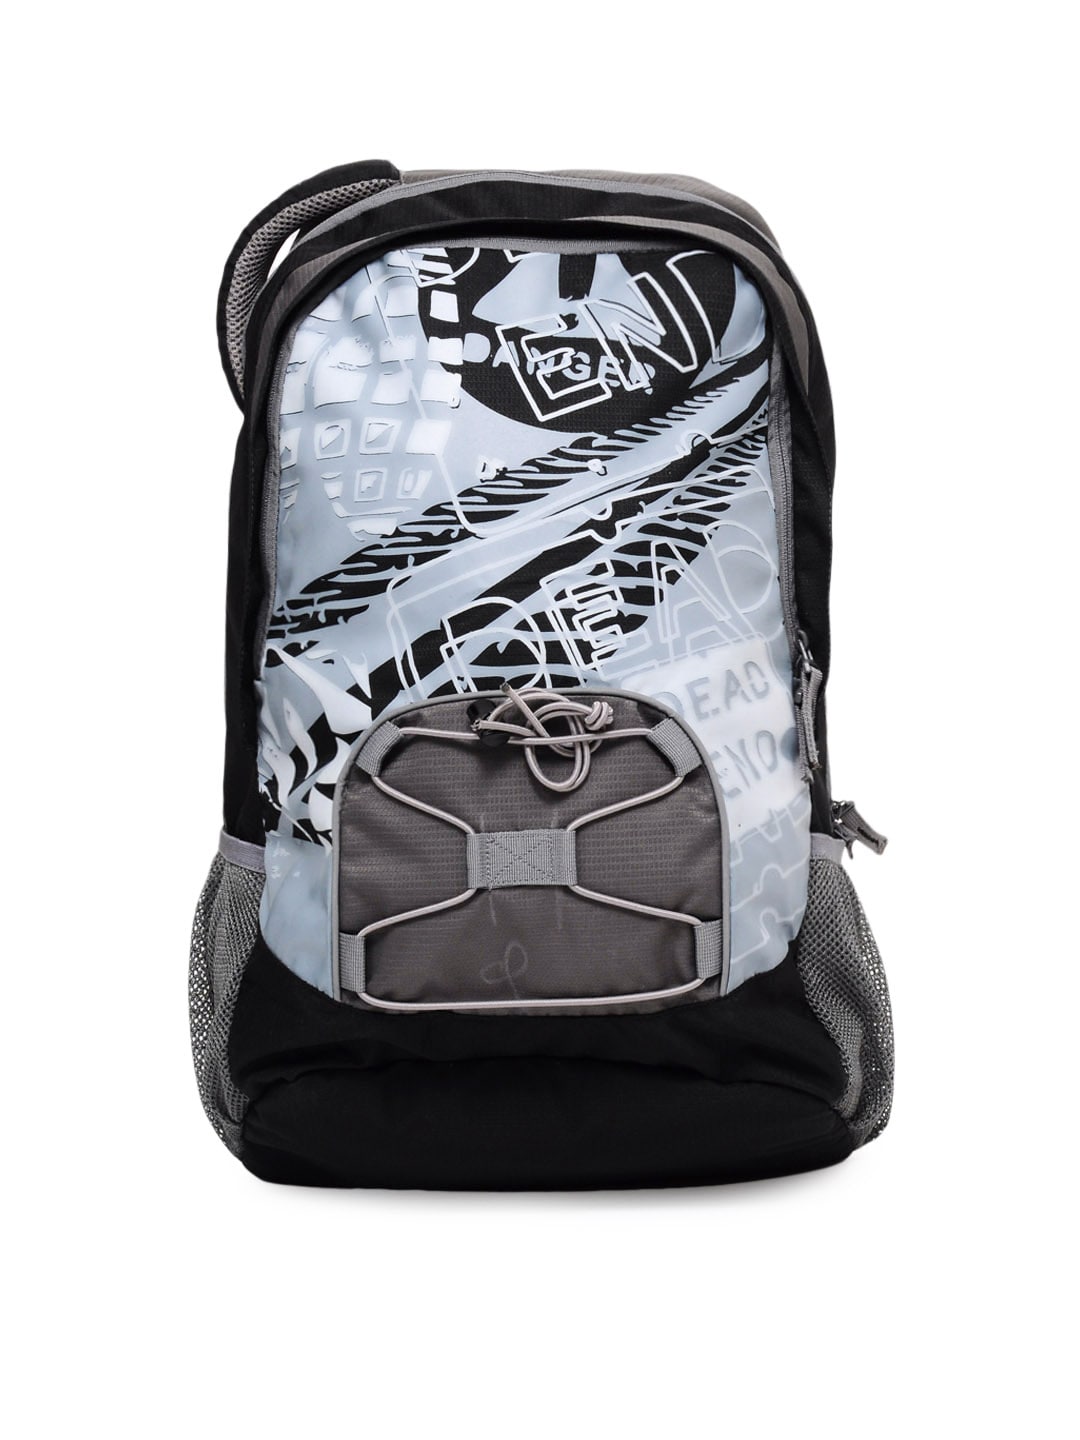 Wildcraft Unisex Black & Grey Printed Laptop Backpack